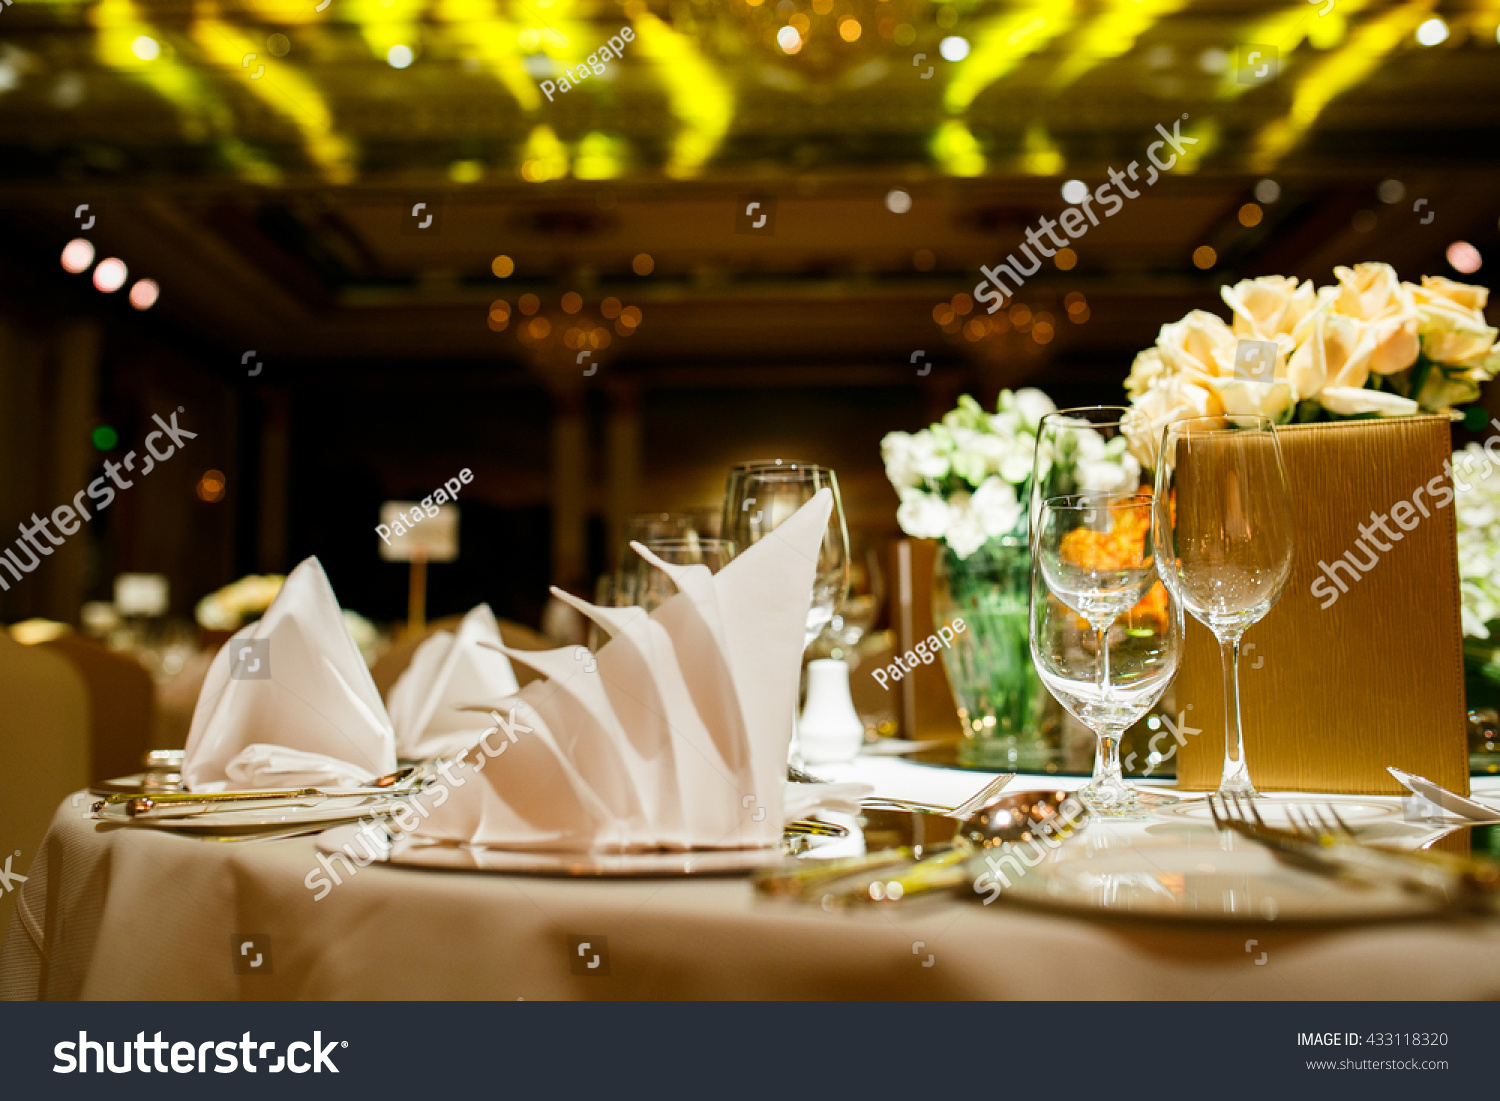 The elegant dinner table. #433118320